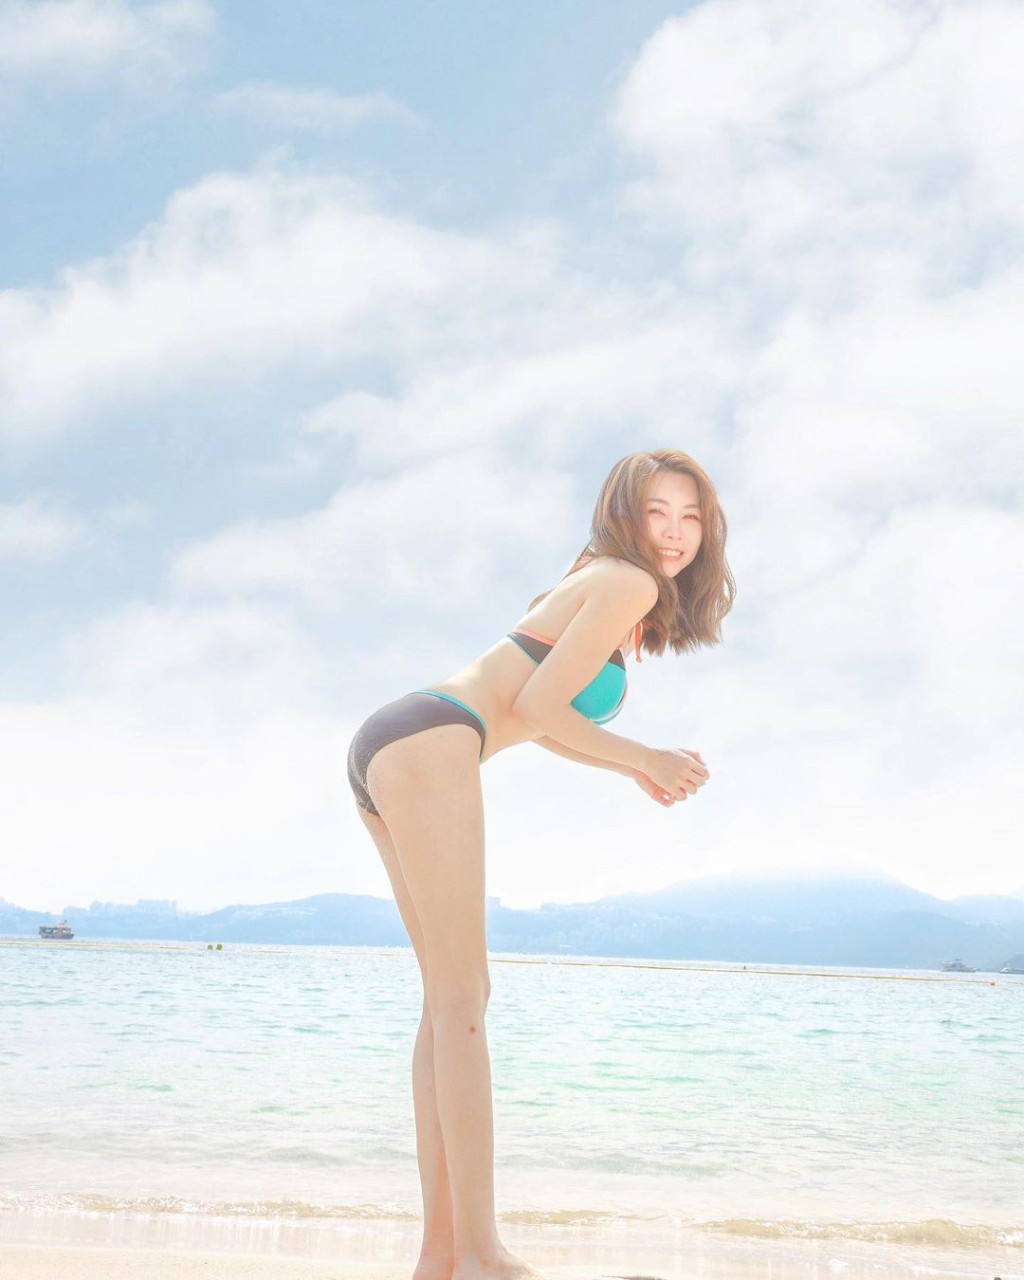 赵咏瑶的社交网有不少泳照。